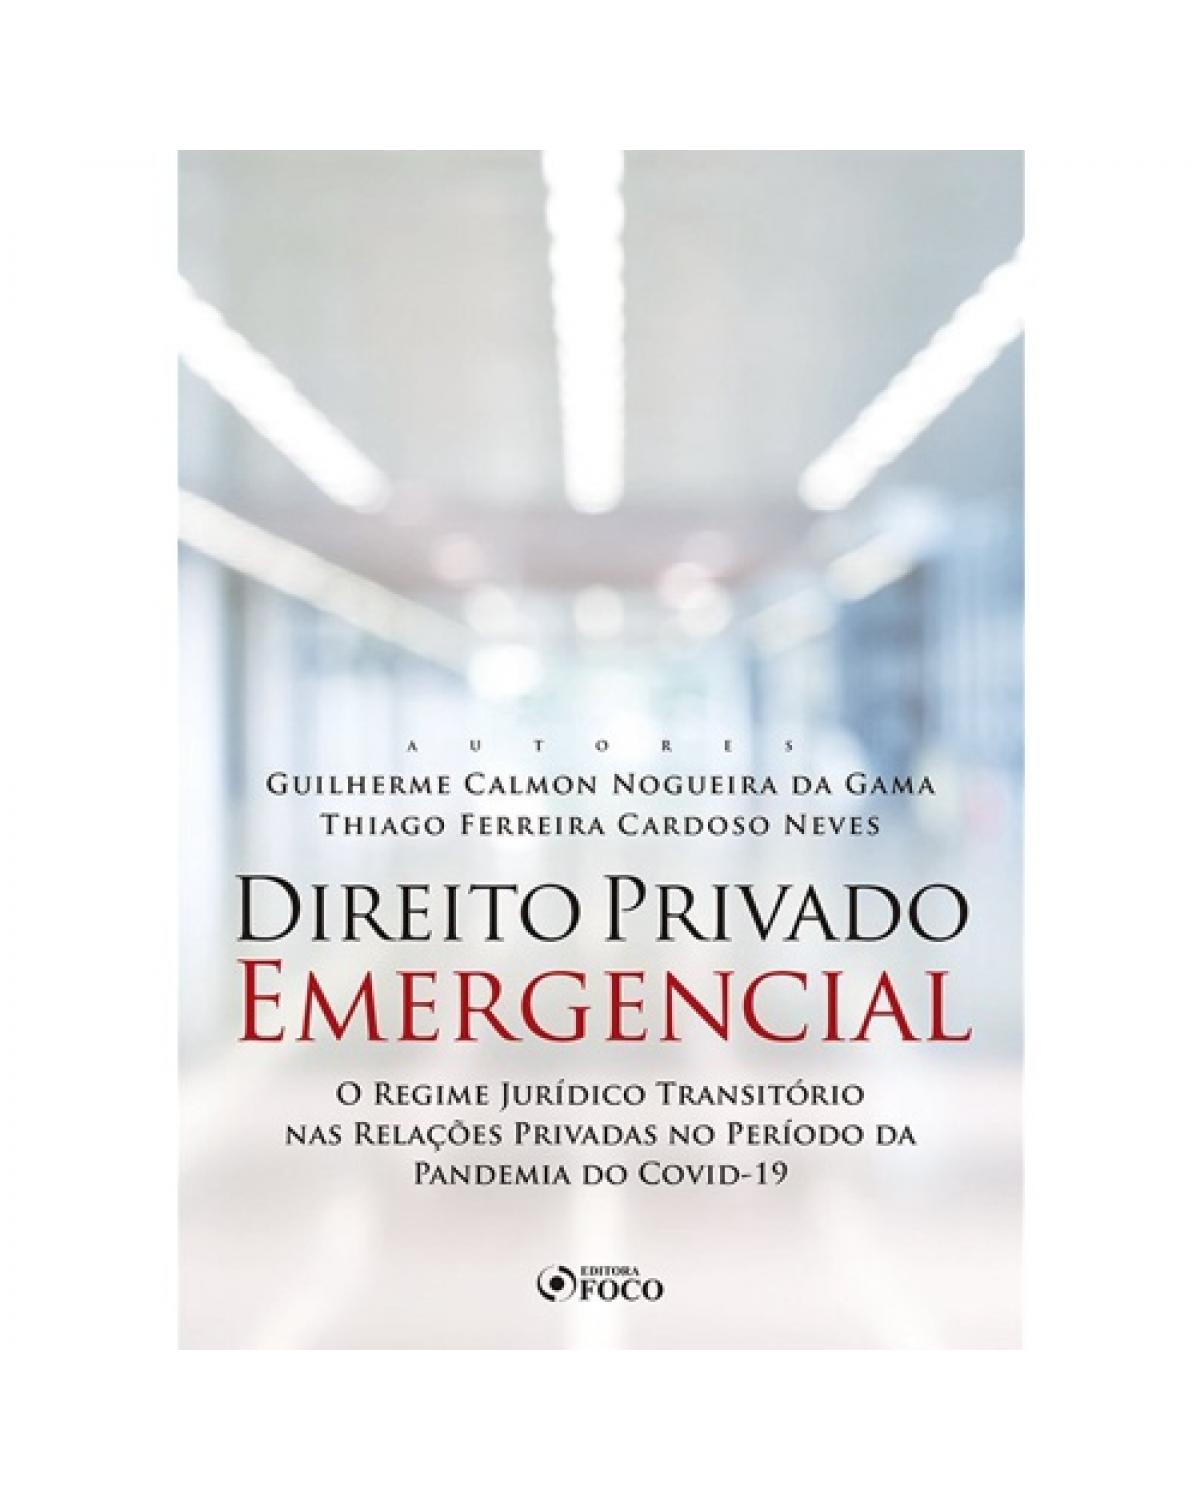 Direito privado emergencial: O regime jurídico transitório nas relações privadas no período da pandemia do COVID-19 | 2020